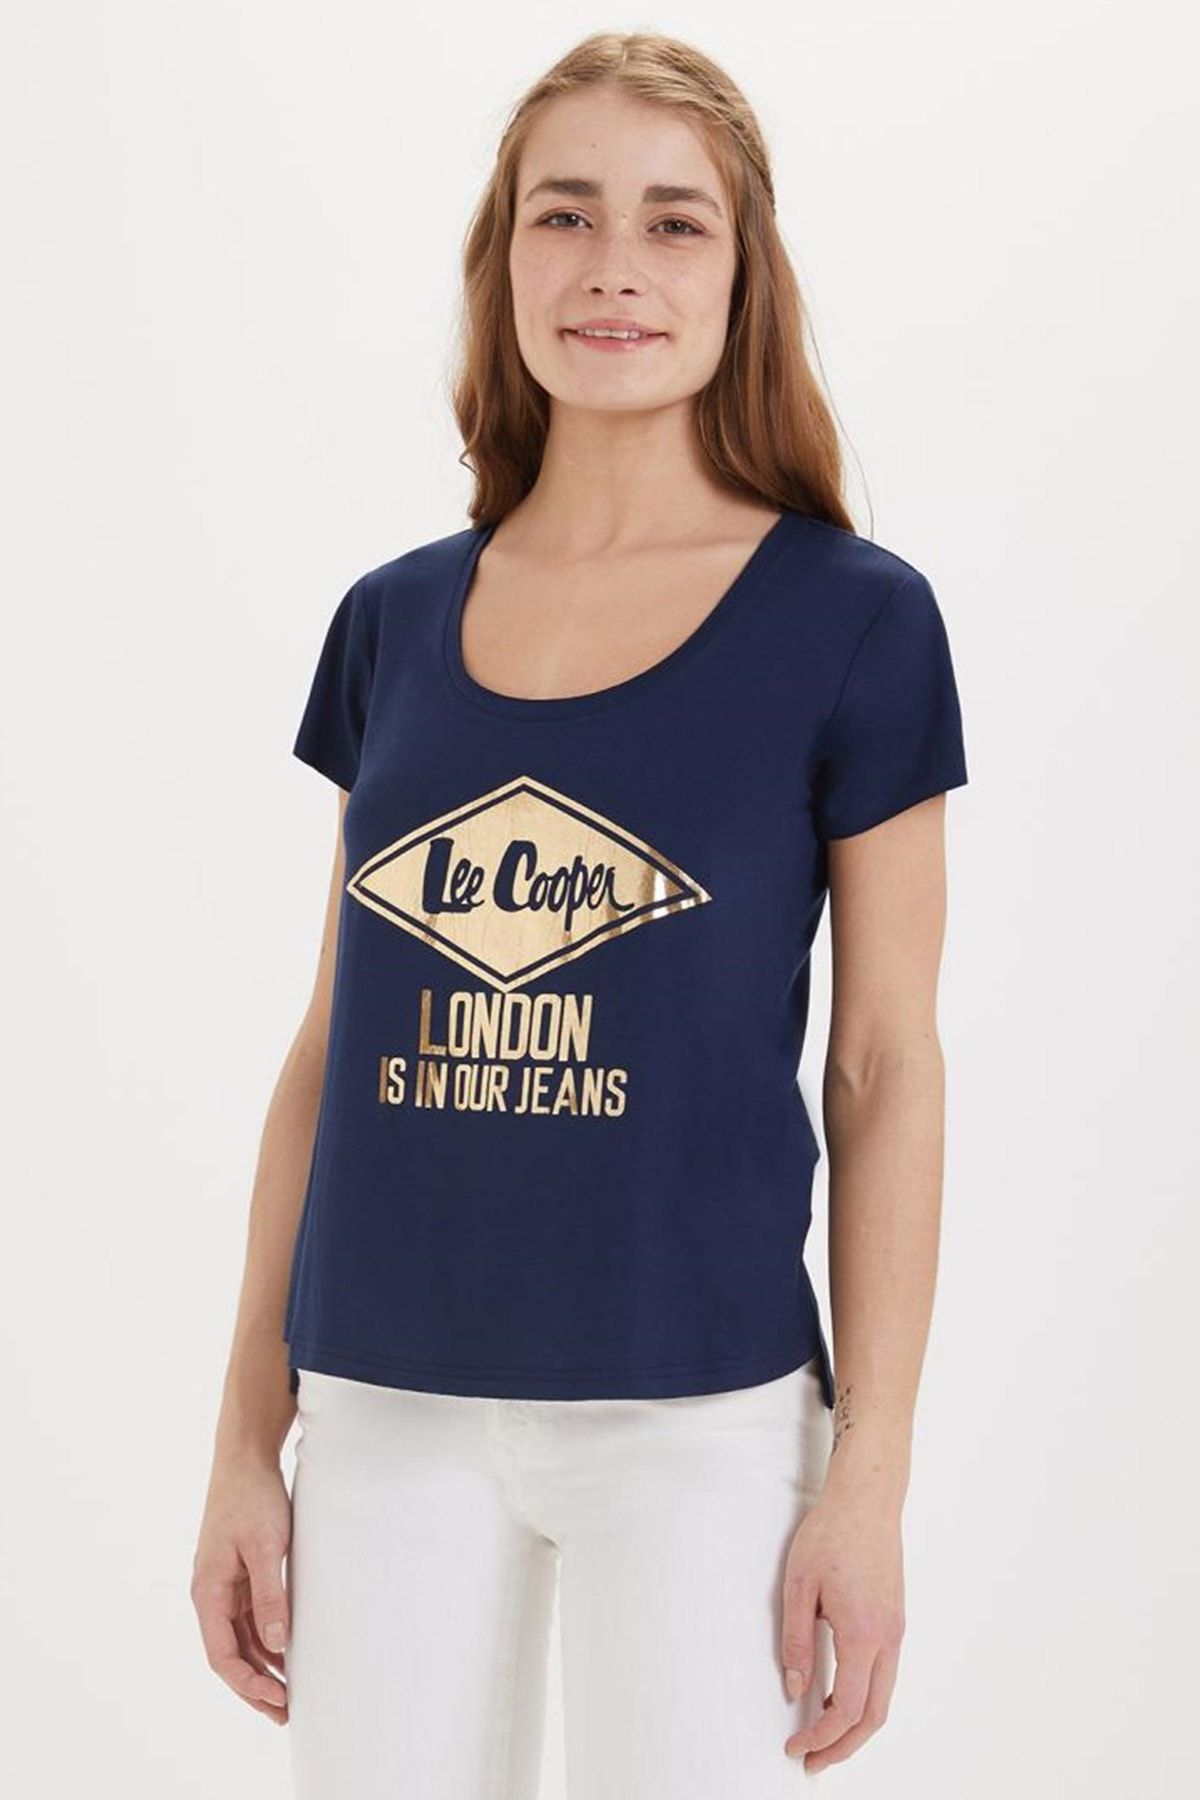 Lee Cooper Kadın Darla O Yaka T-Shirt Lacivert 192 LCF 242023